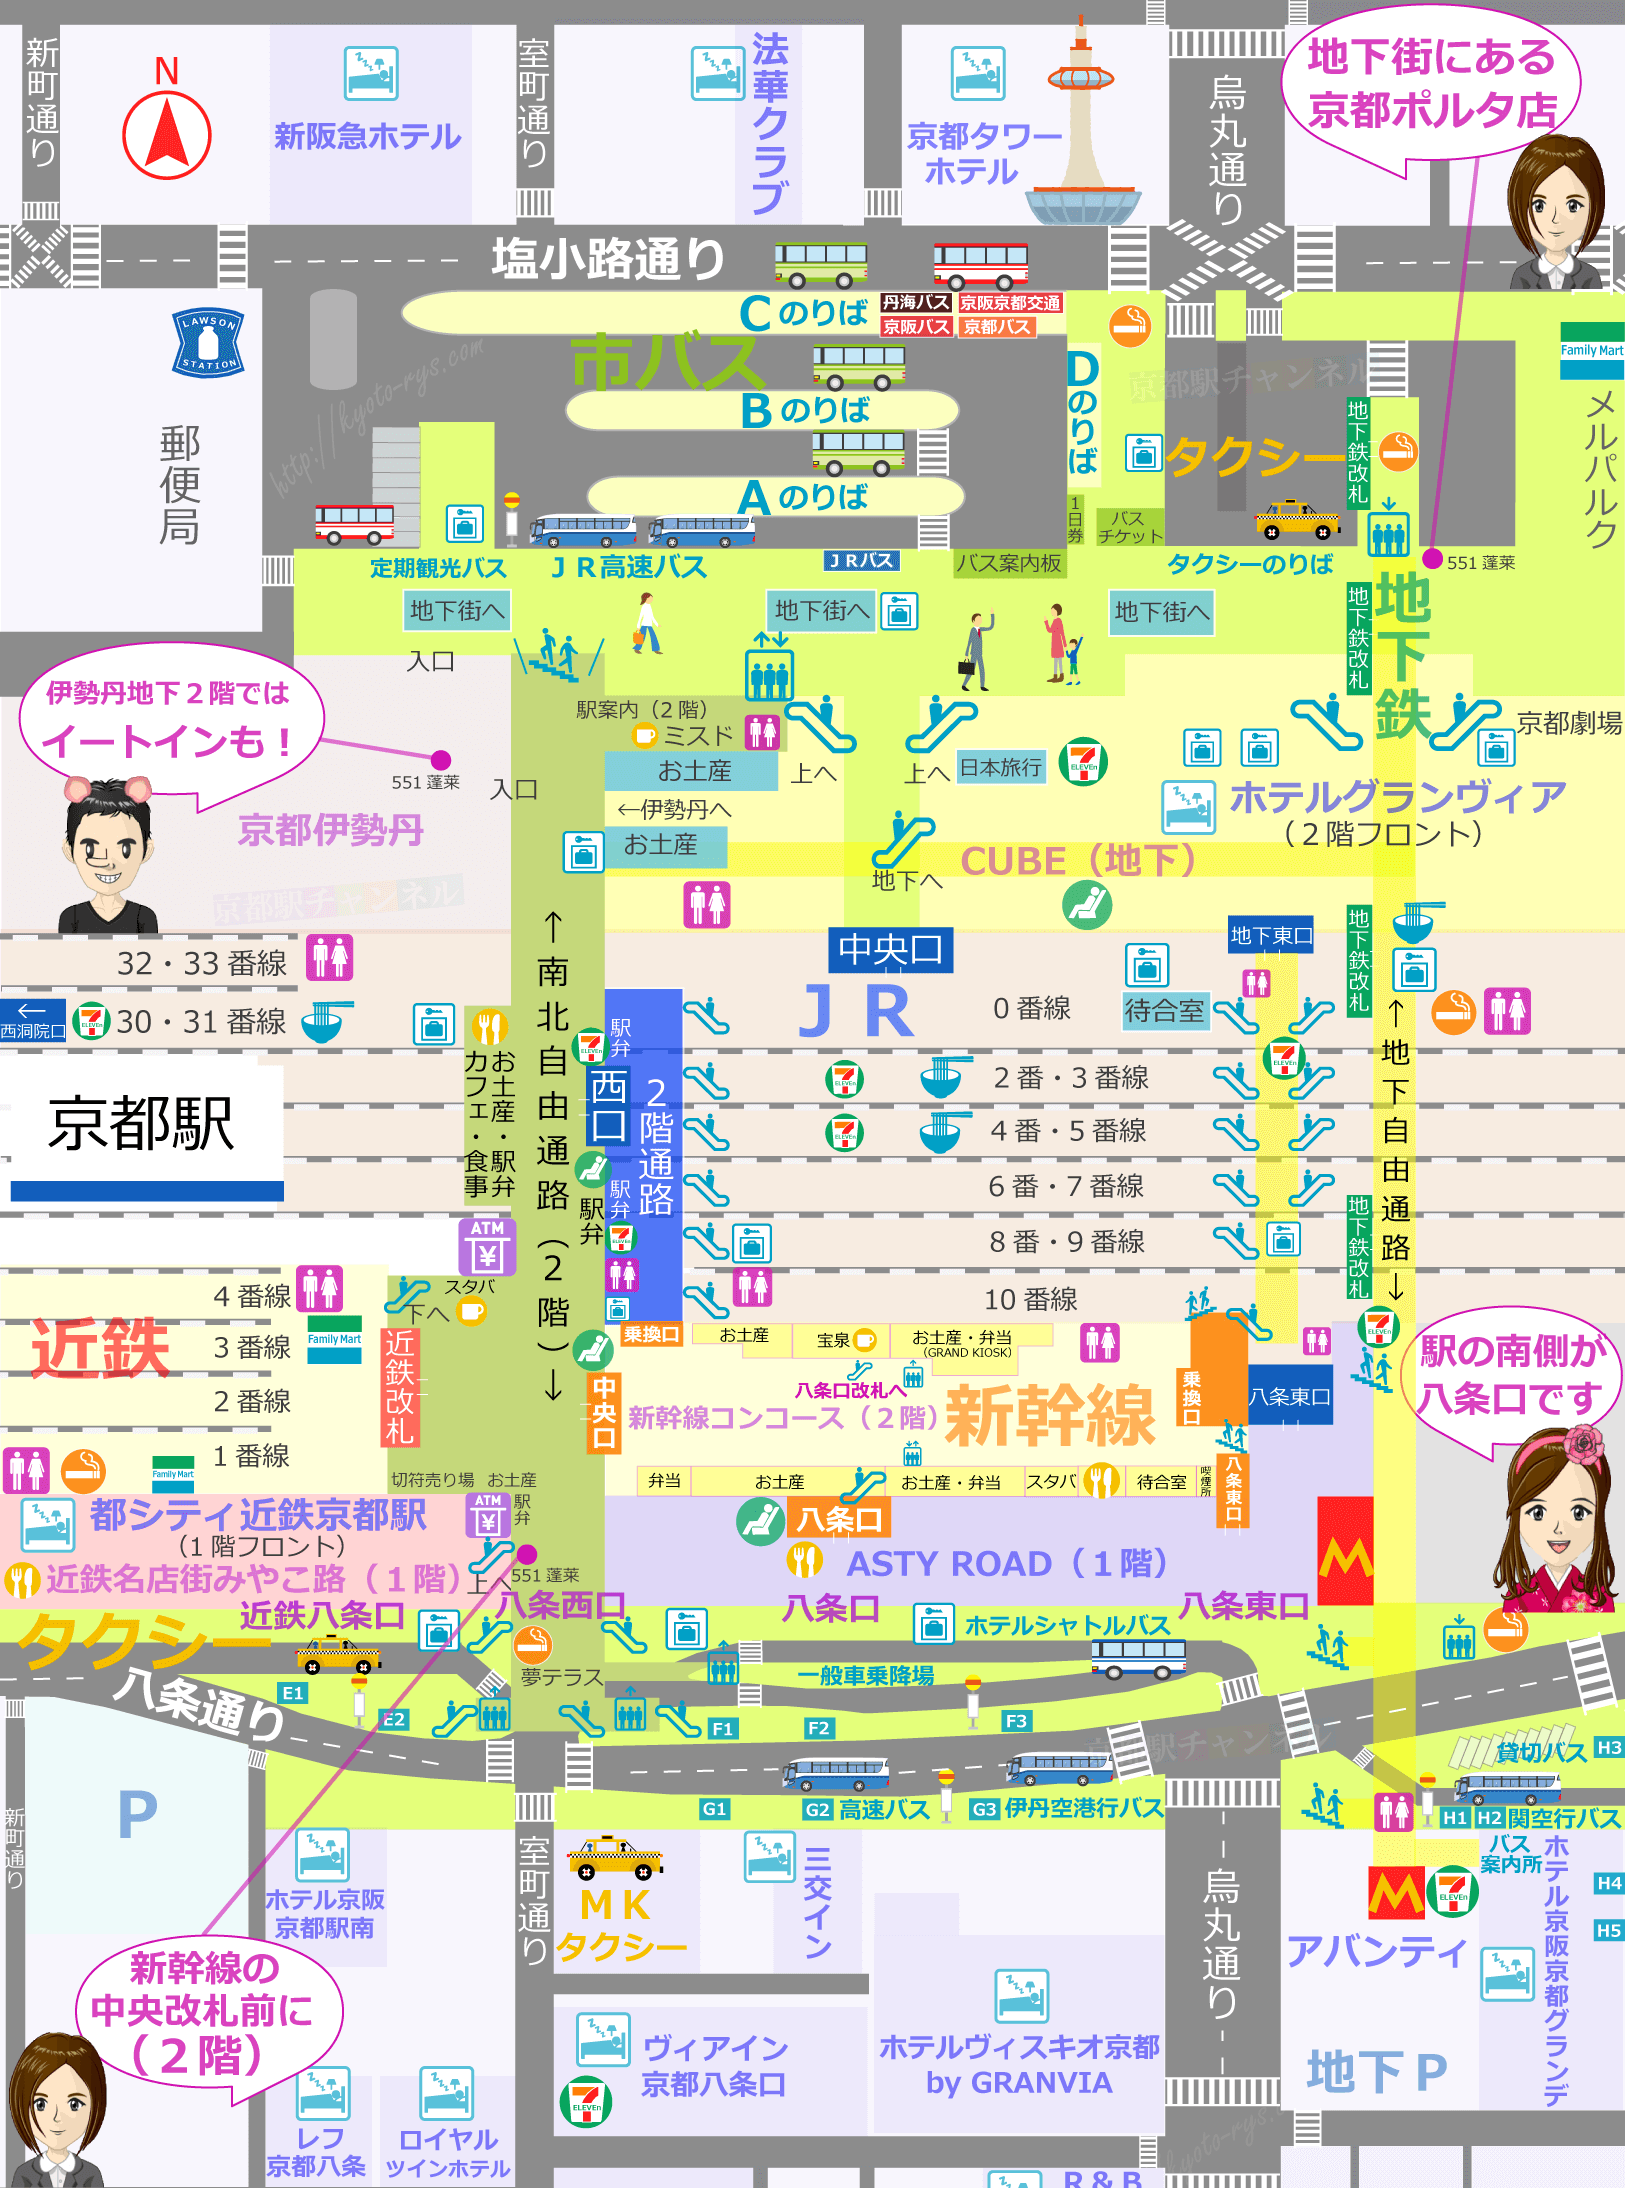 京都駅の地図と551蓬莱の場所